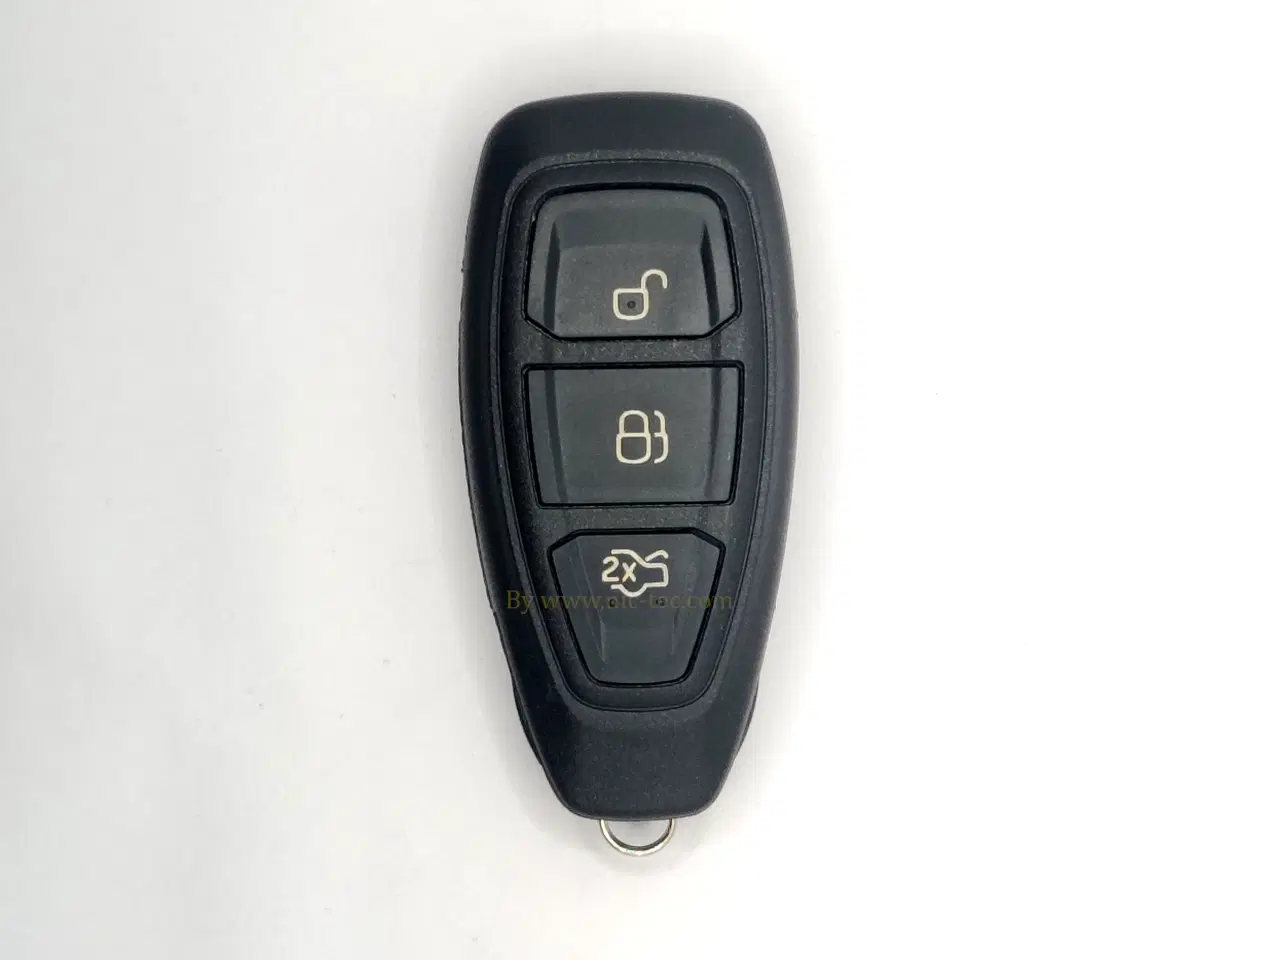 Billede 1 - Keyless nøgle til Ford, flere modeller med nøgle fri betjening bla Focus, C-Max, Mondeo mv.